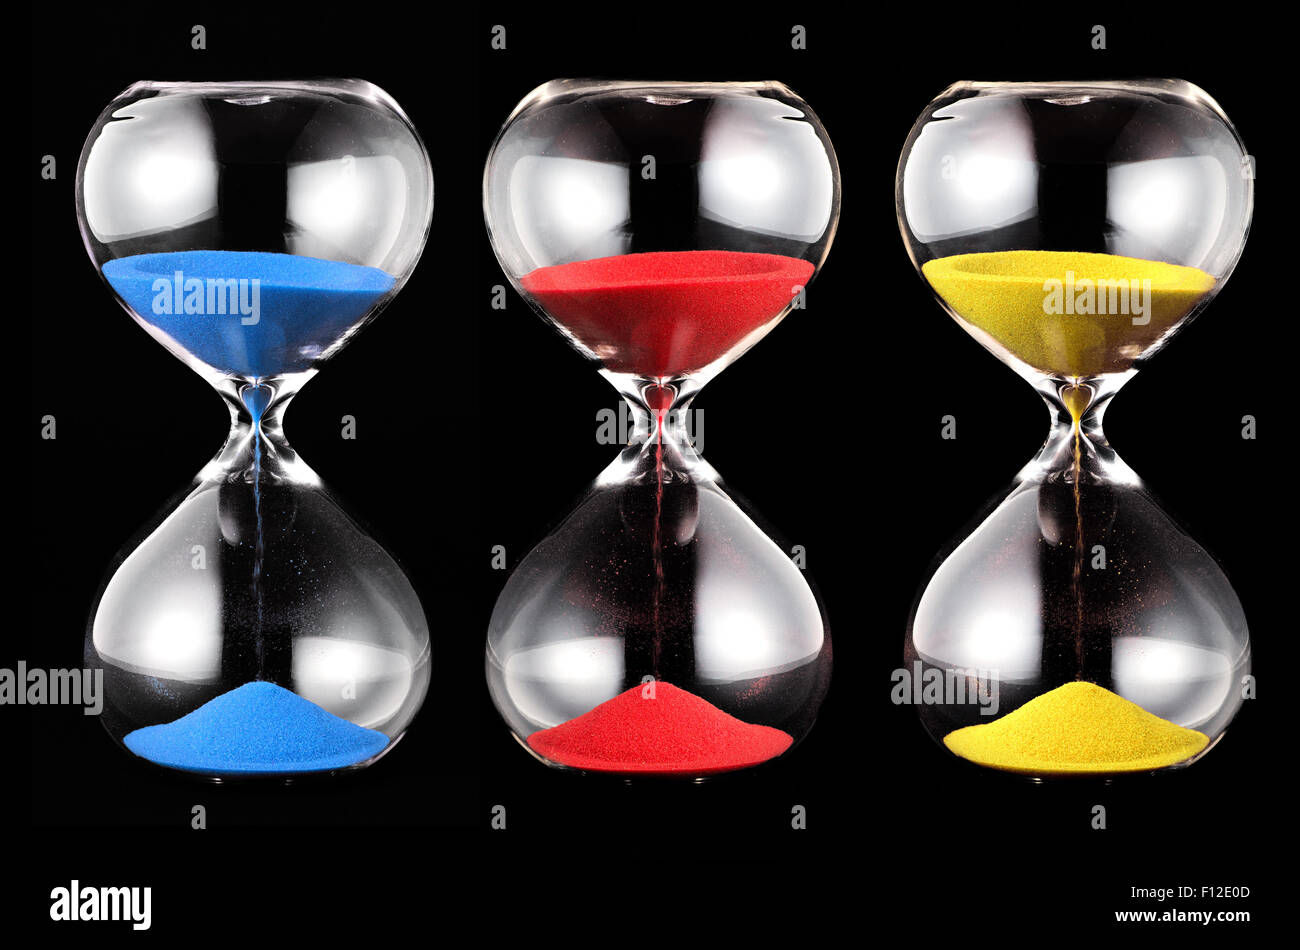 Tres relojes de arena con arena de colores, azul, rojo y amarillo, corriendo a través de las lámparas de cristal de medir el paso del tiempo Foto de stock